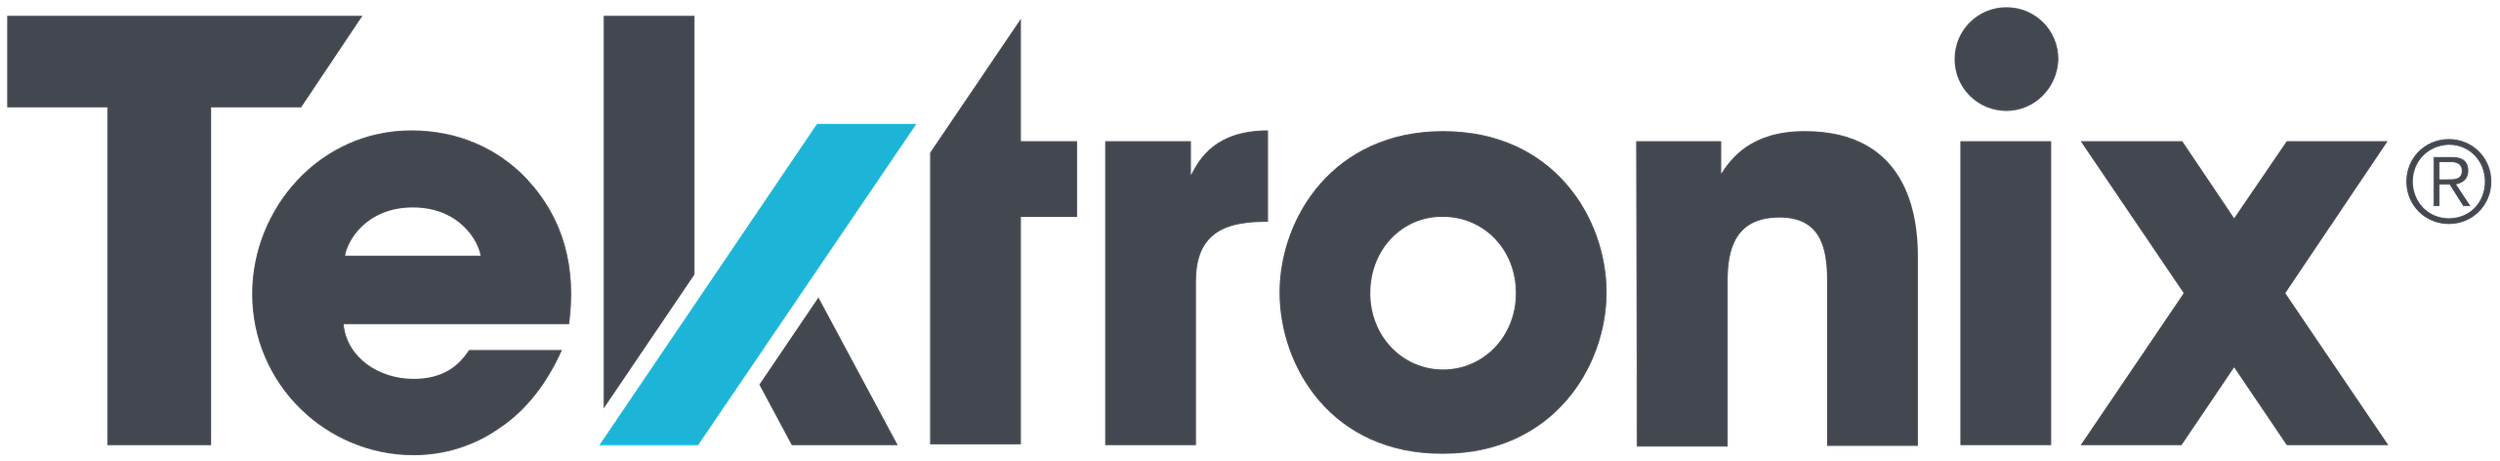 Tektronix_logo_(2016).svg.png